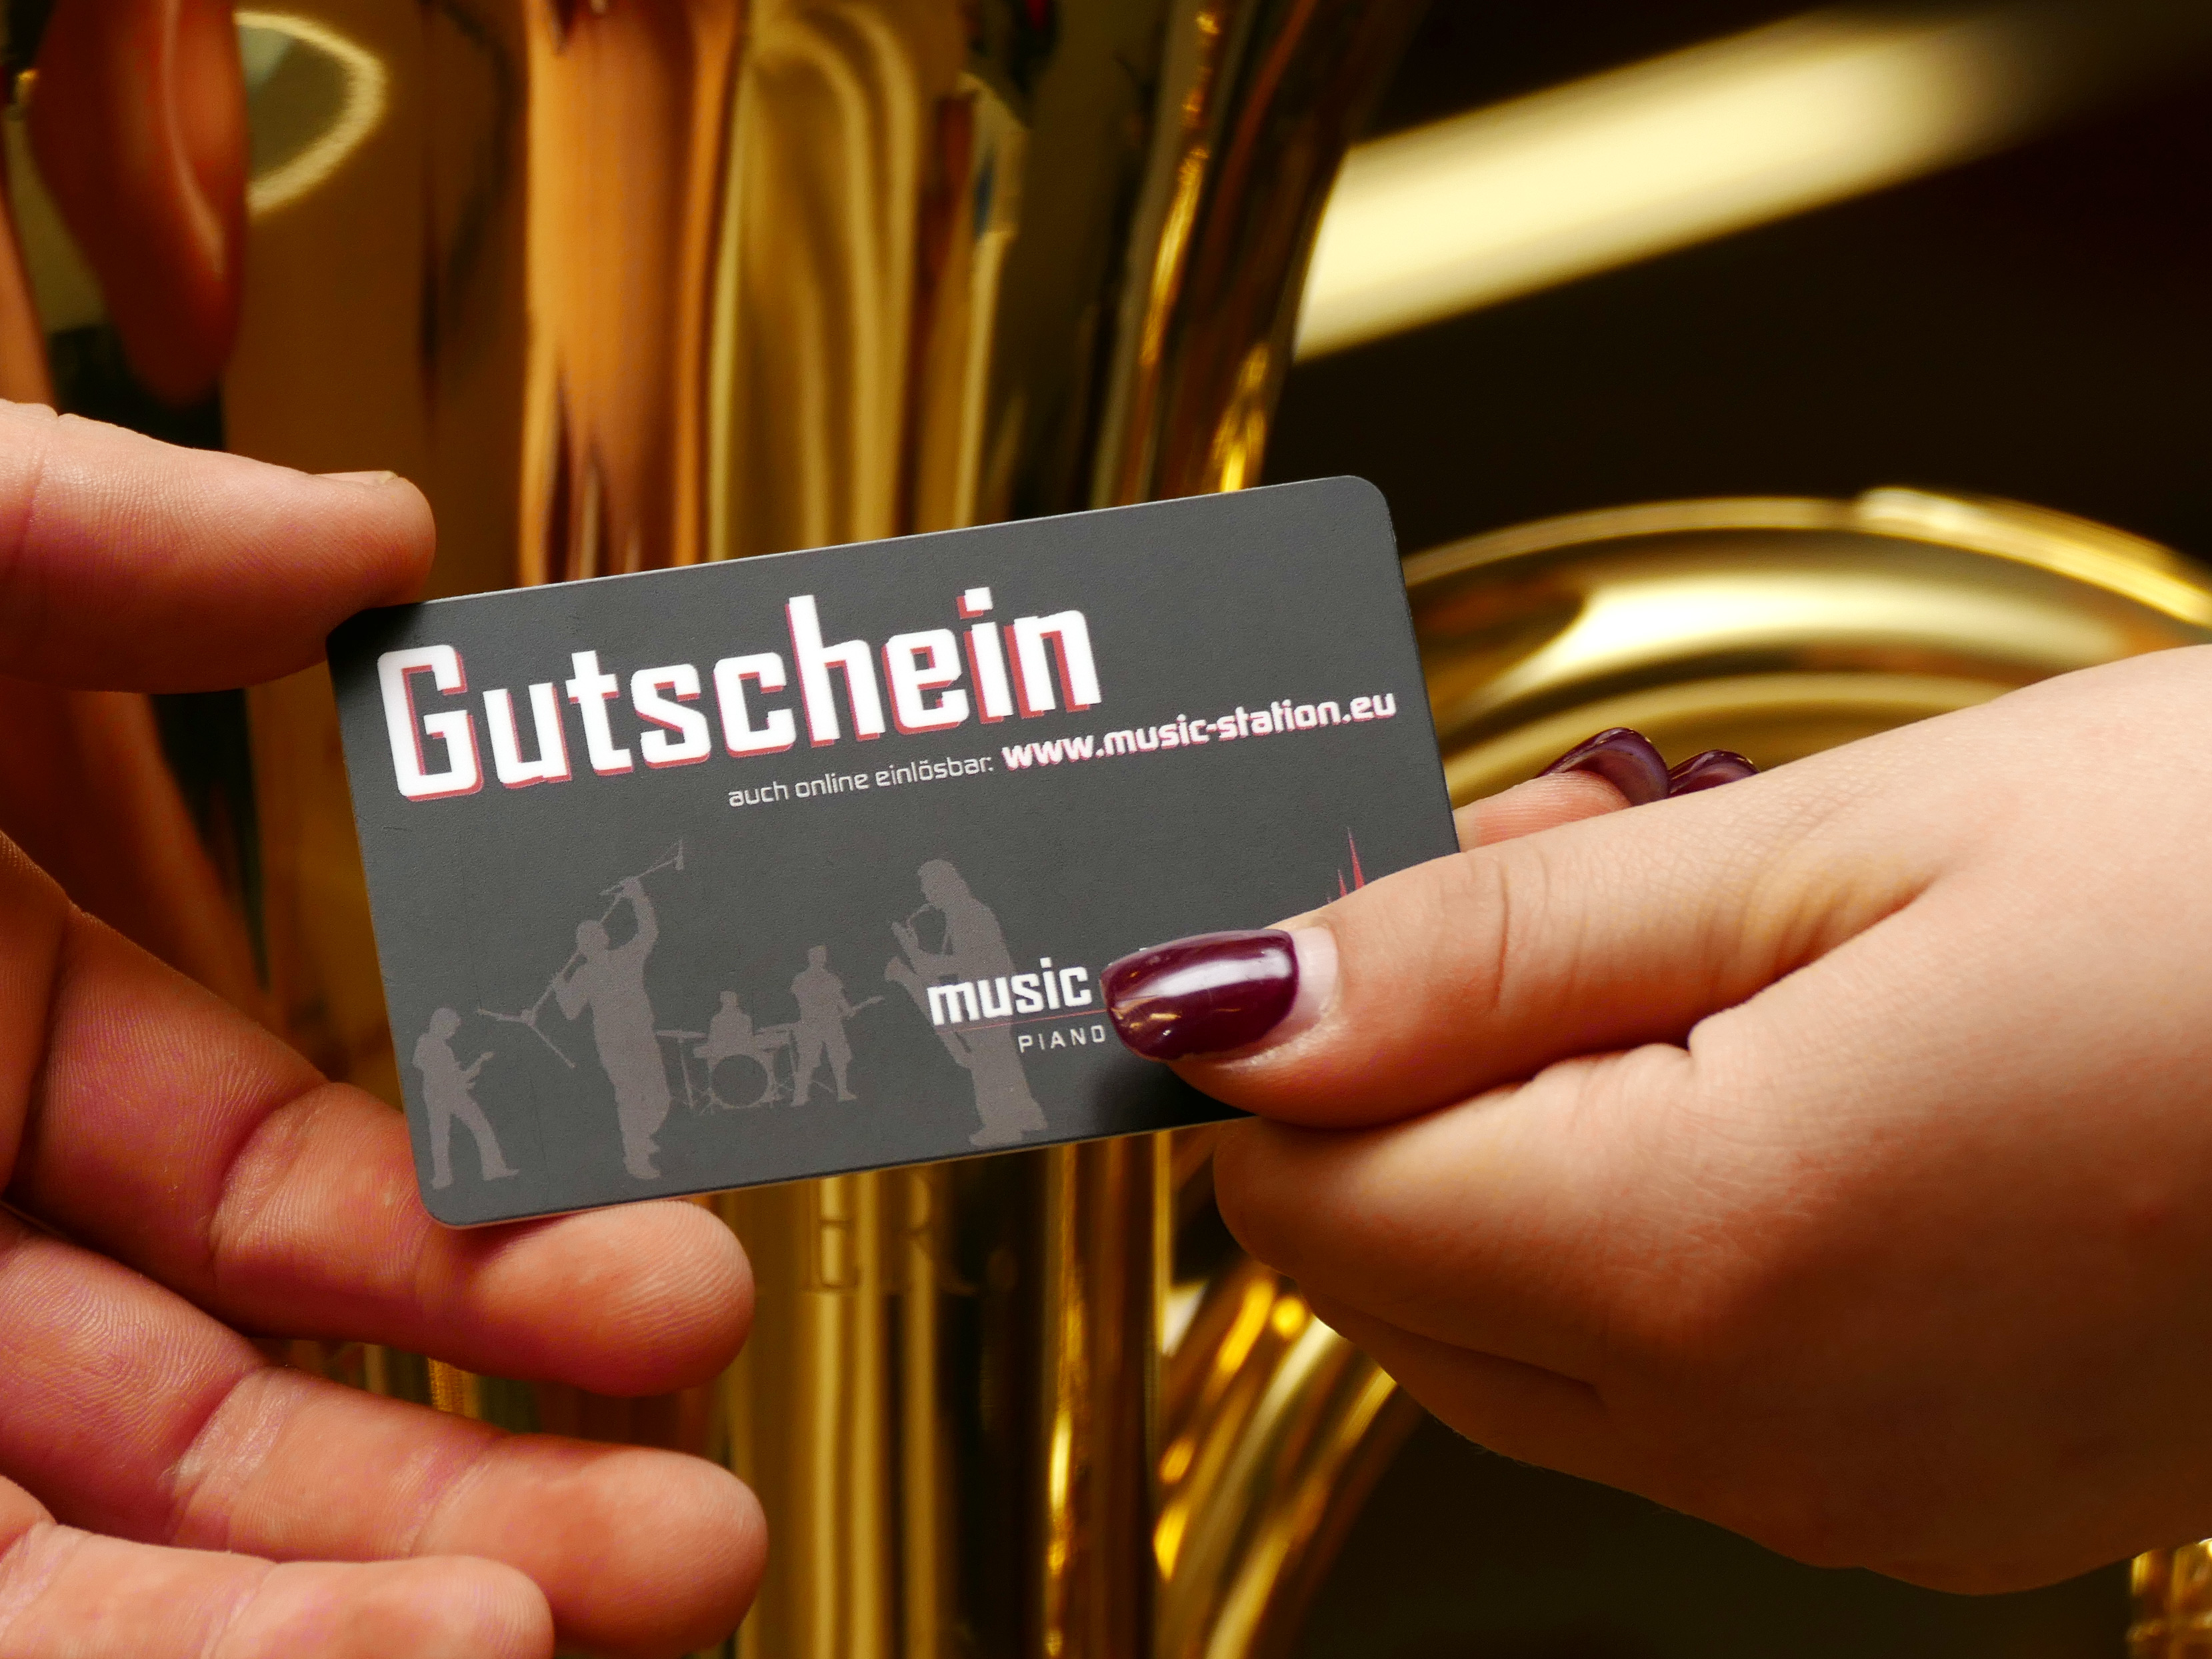 Music Station Gutschein 50 Euro